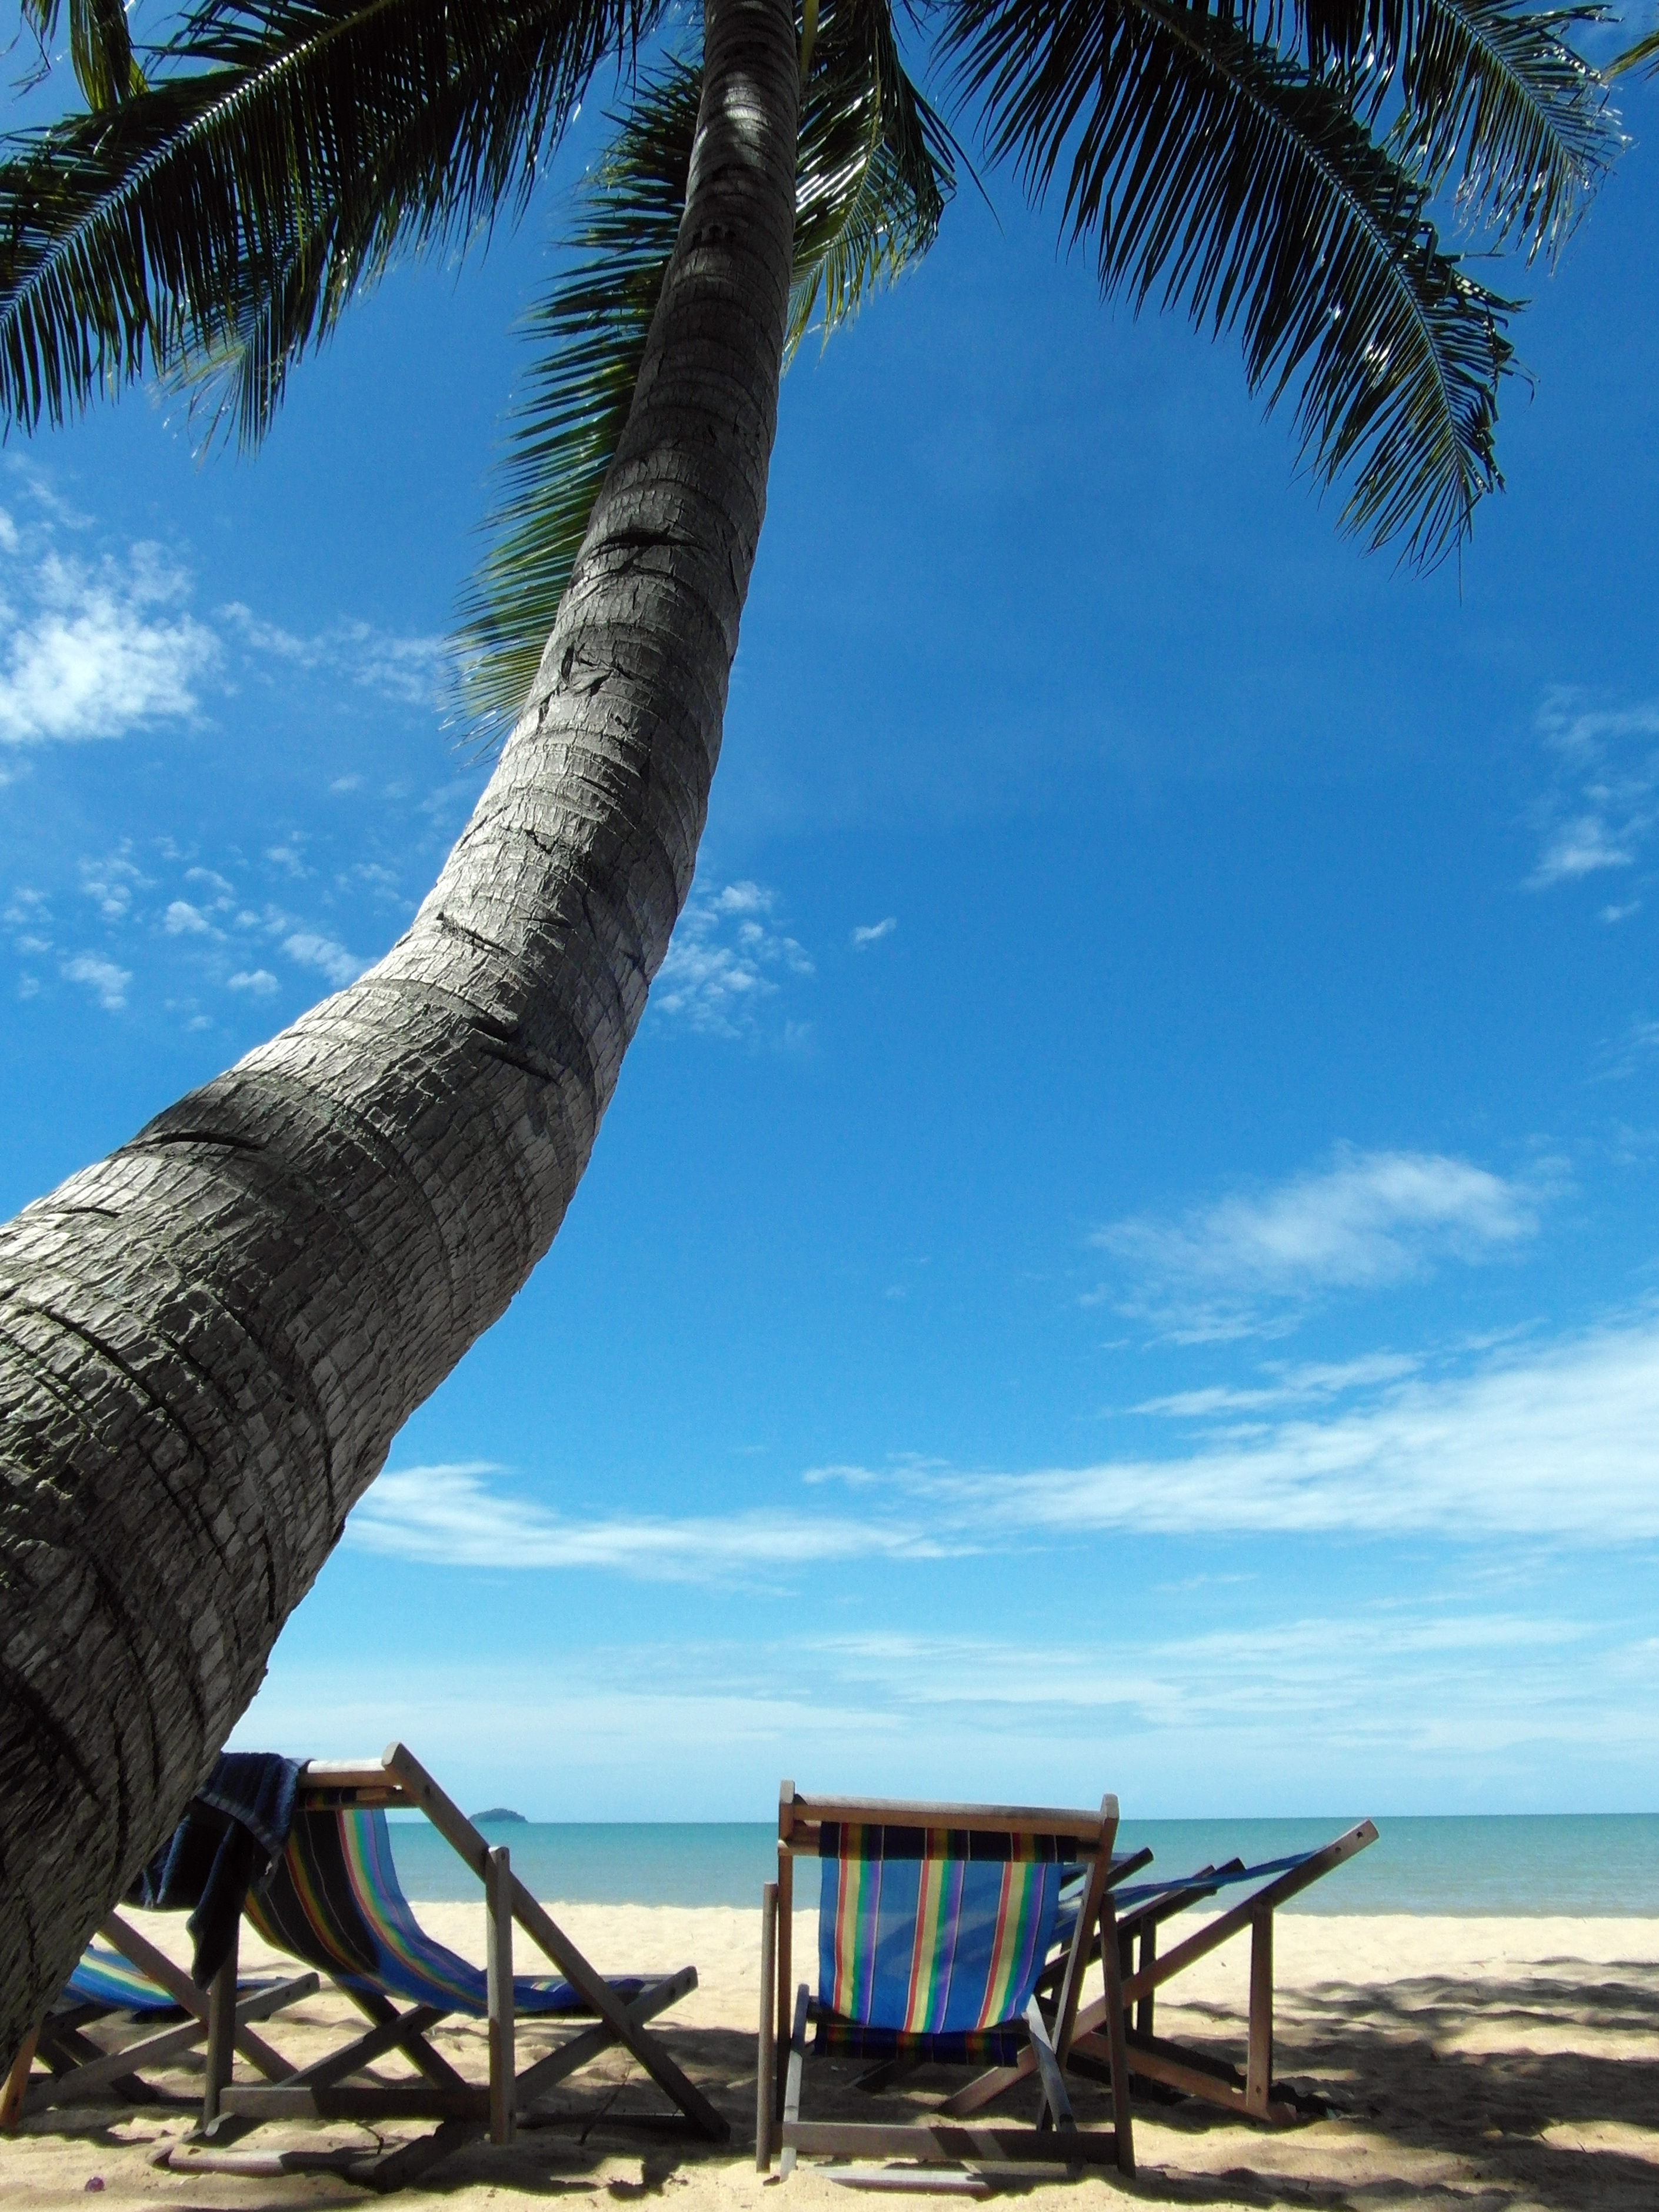 Deckchairs on a tropical beach photo